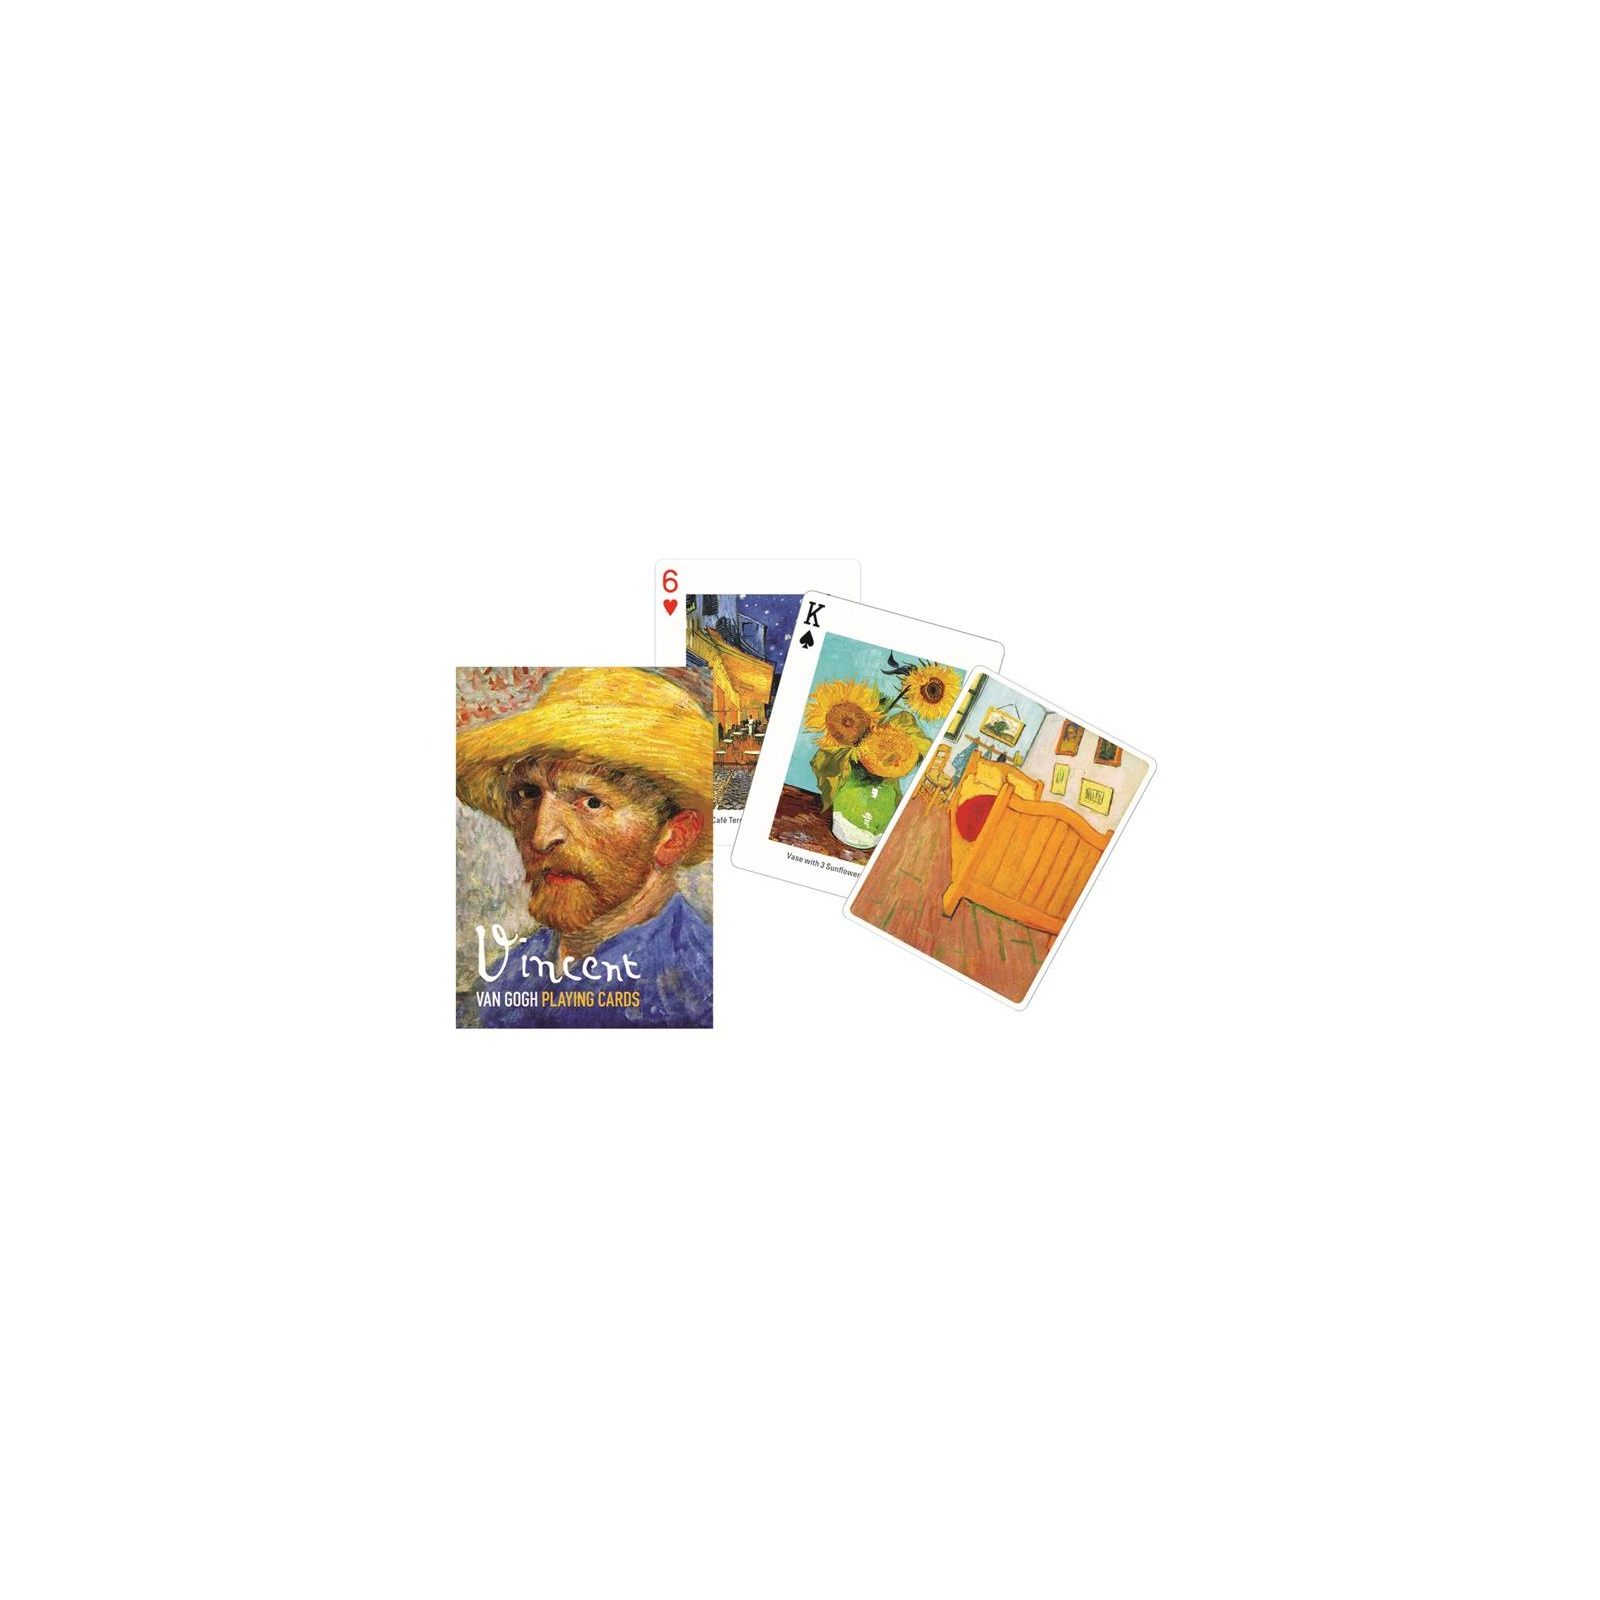 Гральні карти Piatnik Вінсент ван Гог, 1 колода х 55 карт (PT-164910)